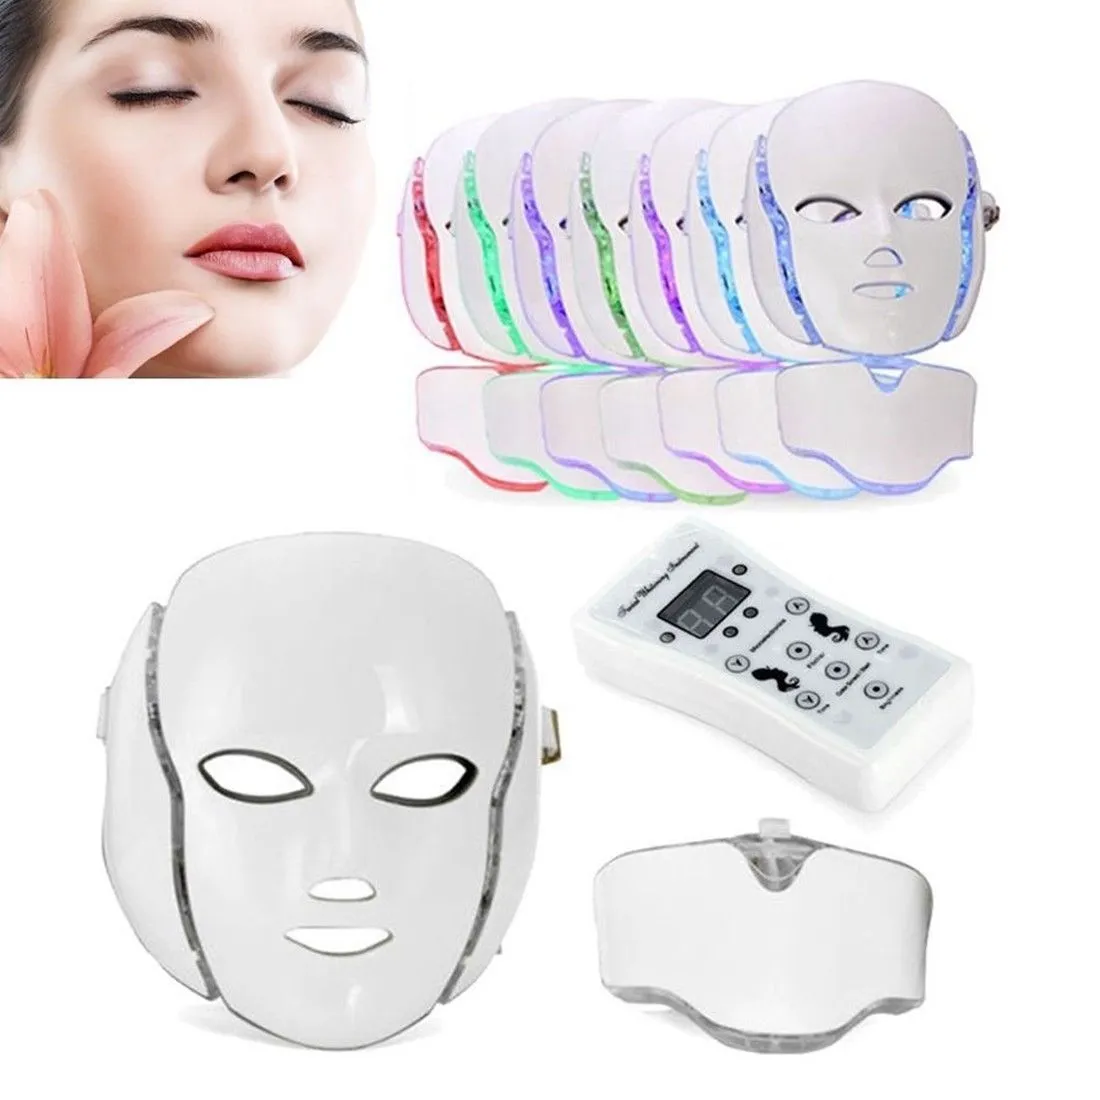 PDT 7 LED Lichttherapie Gezicht Schoonheid Machine LED Facial Neck Mask met Microcurrent voor Skin Whitening-apparaat